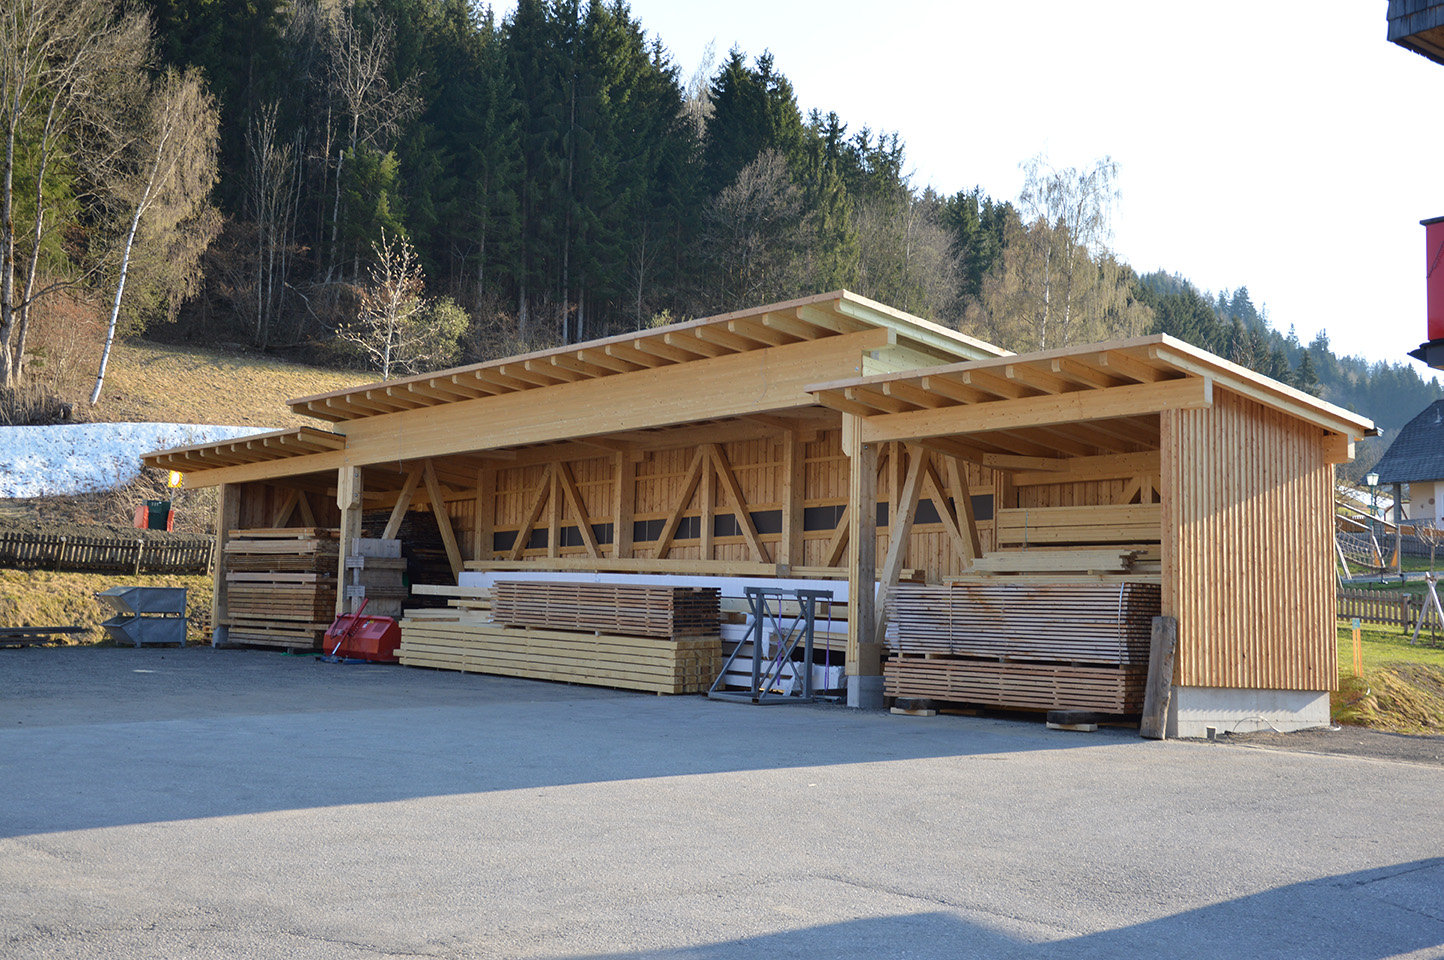 Holzbau Stiegler KG, Haus/Ennstal